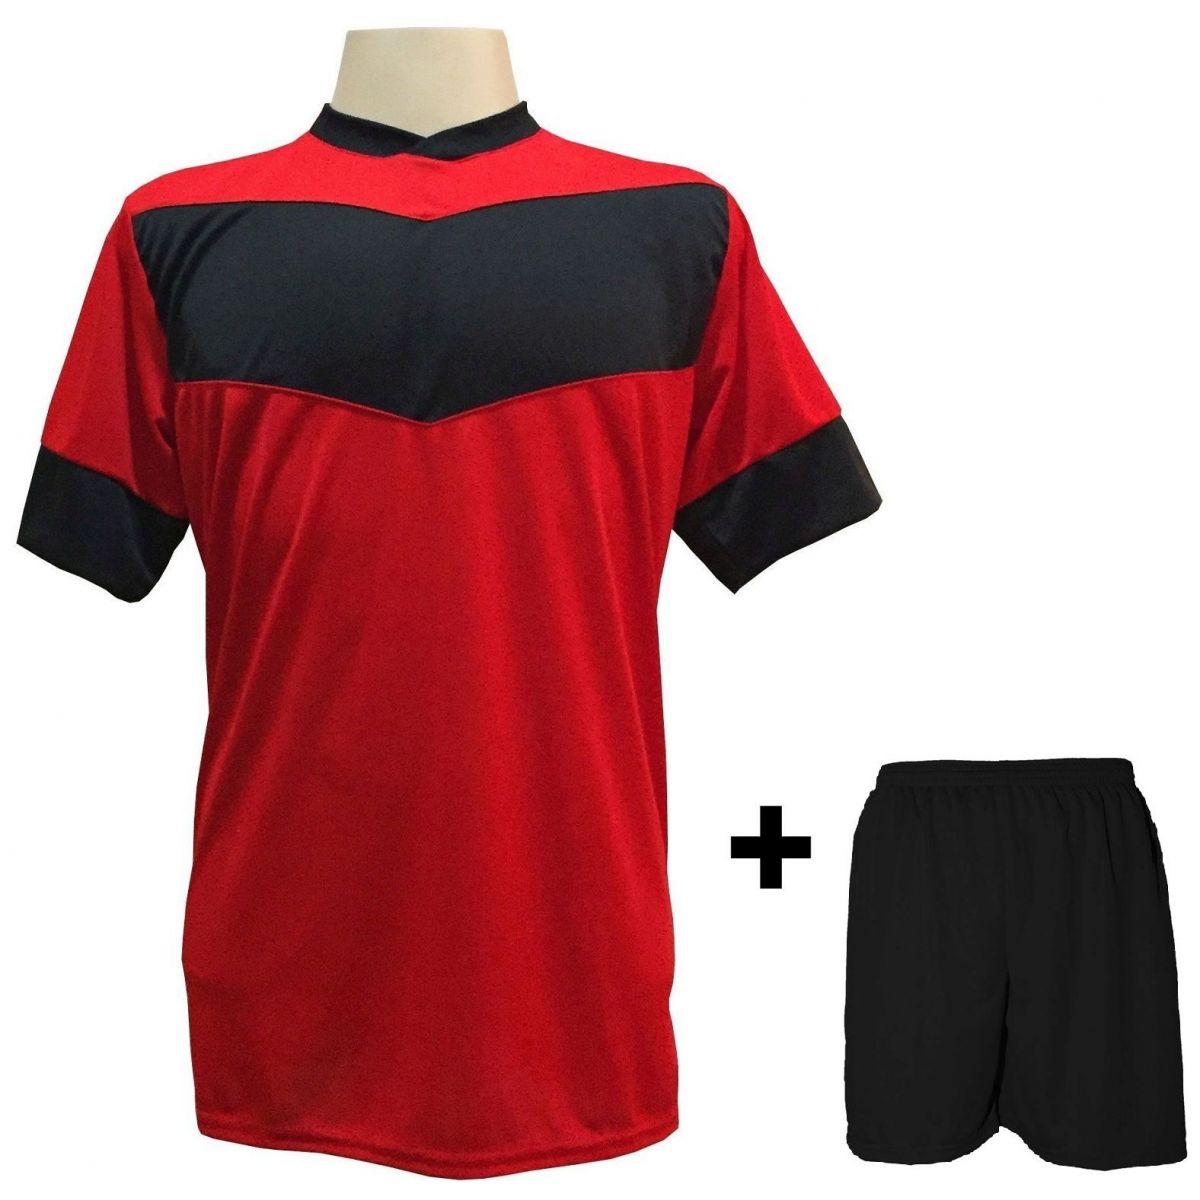 Uniforme Esportivo com 18 camisas modelo Columbus Vermelho/Preto + 18 calções modelo Madrid + 1 Goleiro + Brindes